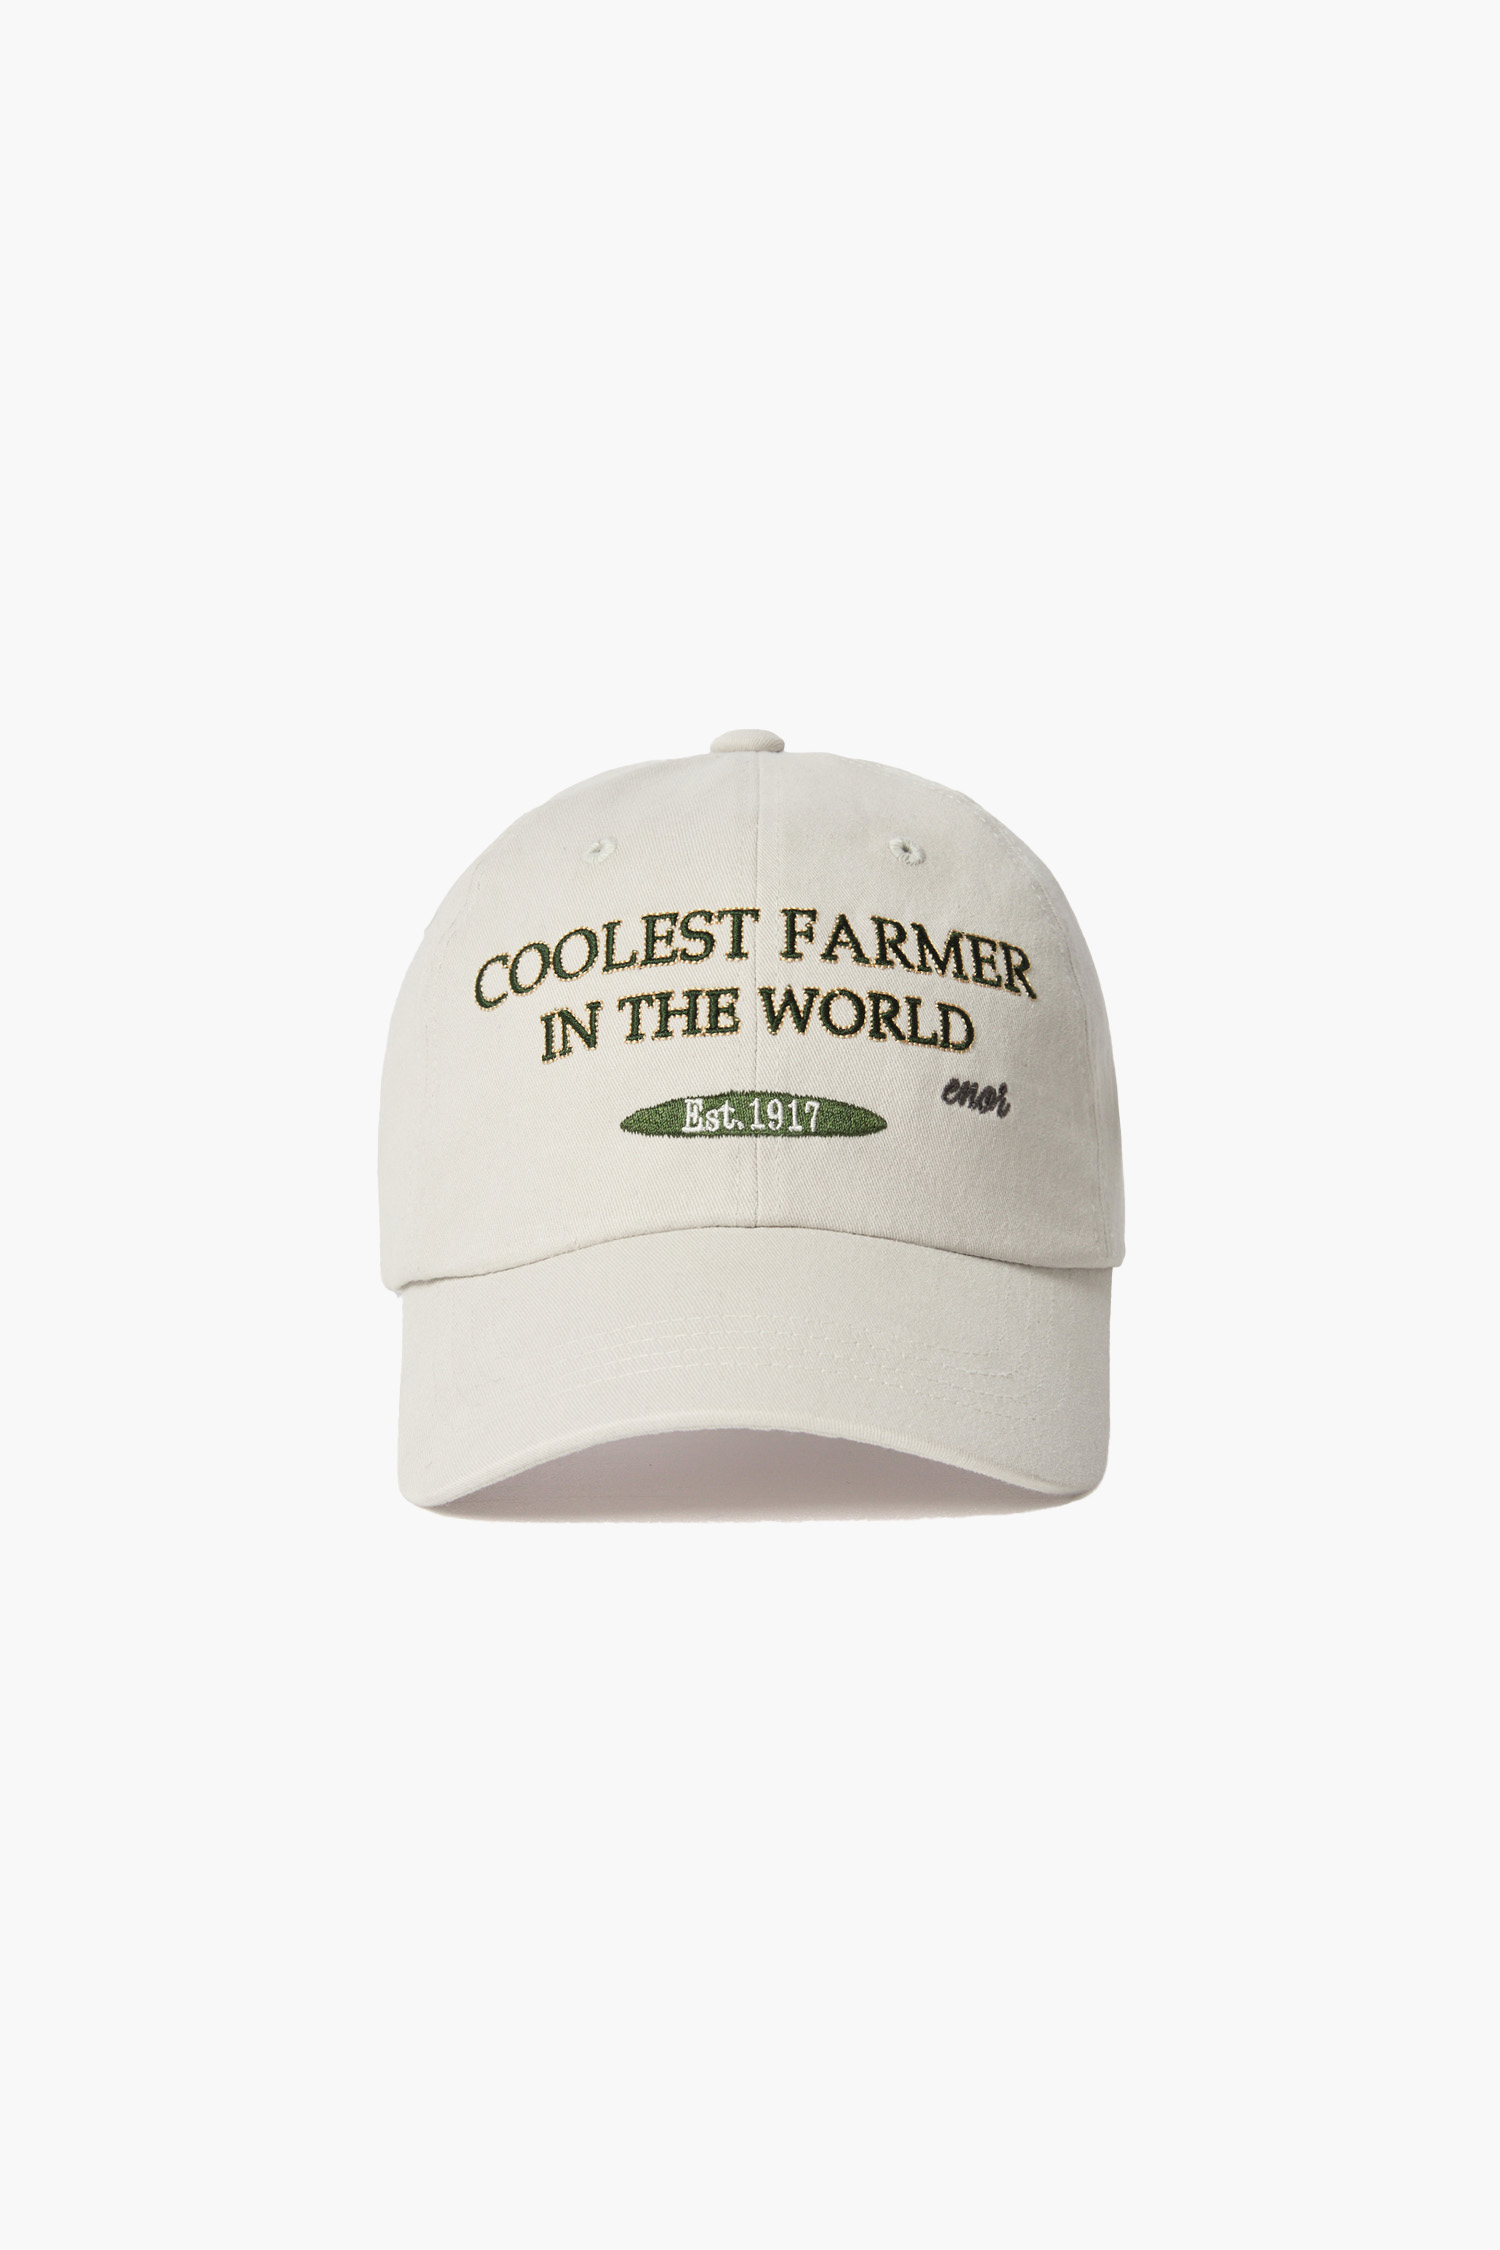 COOLEST FARMER BALL CAP - LIGHT GREY